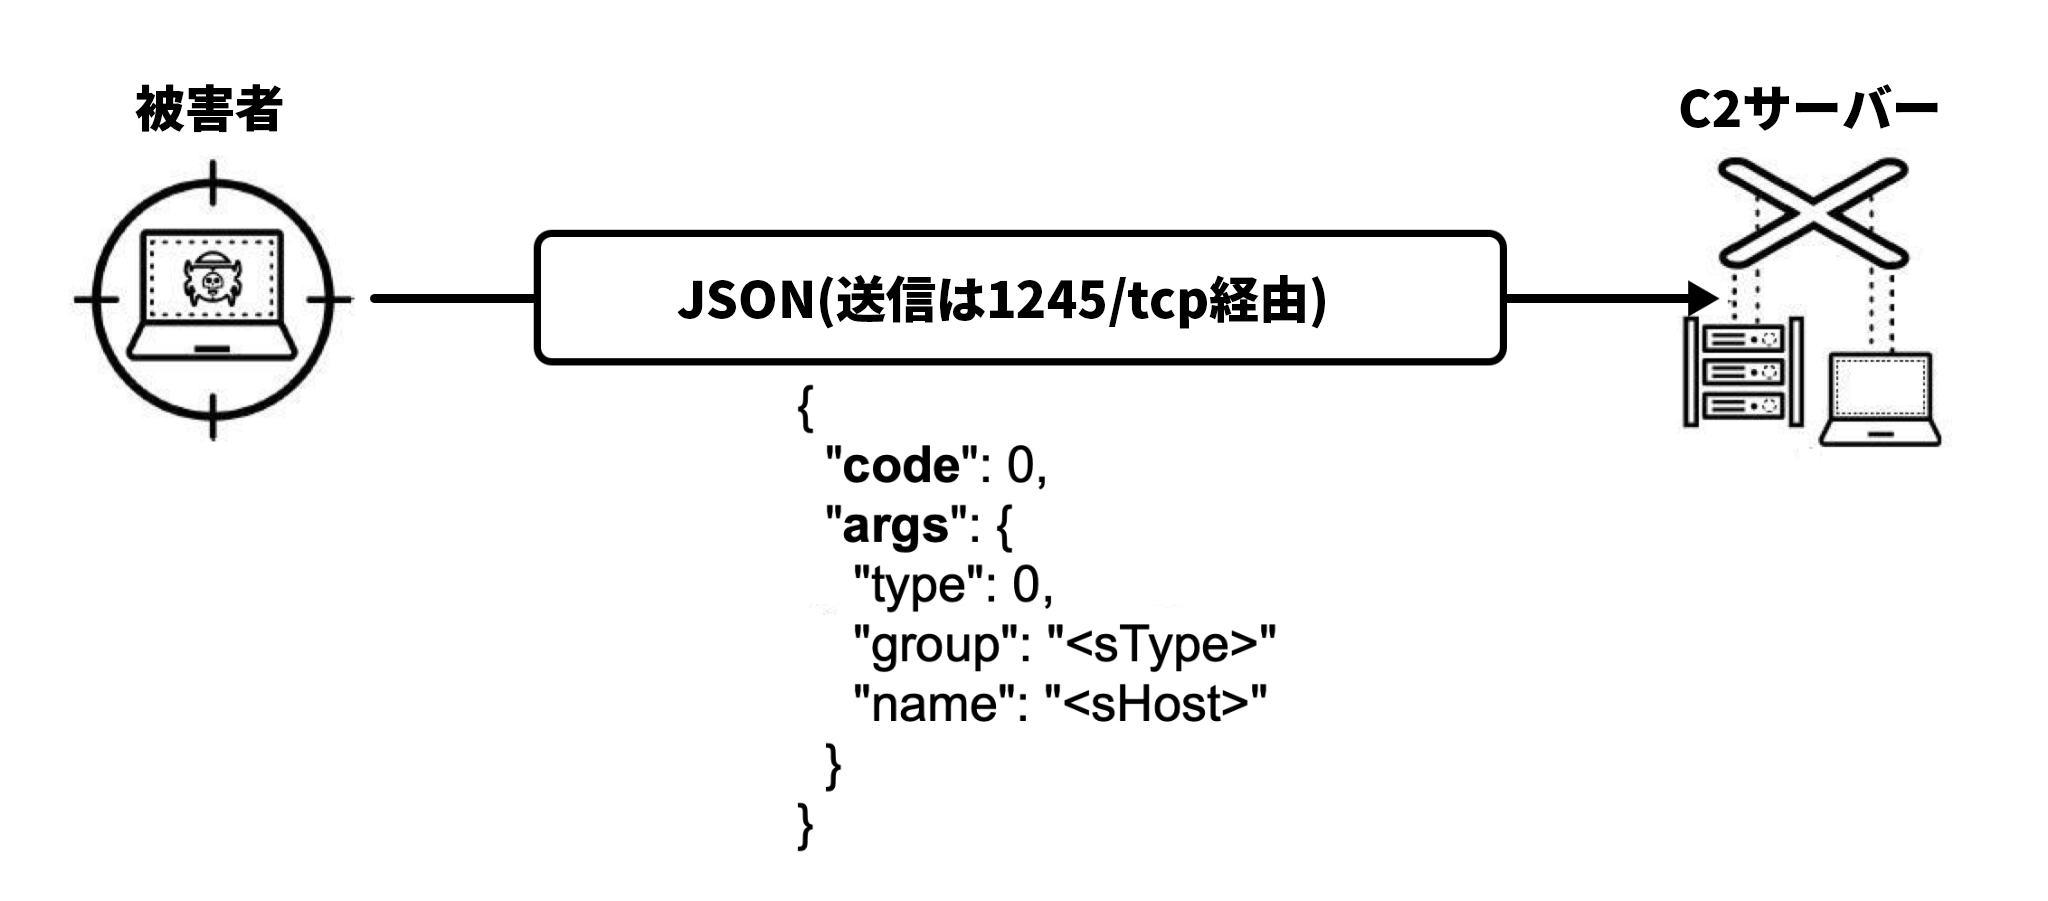 画像 7 は、ハートビート コマンドと制御メッセージを表す図です。被害者は、ターゲット内で、盗聴されたノート パソコンのアイコンとして表現されています。JSON は TCP ポート 1245 で送信されます。操り人形の糸につながれたサーバーとノート パソコンのアイコンで象徴されるC2 サーバーへつながる矢印が描かれています。JSON テキストの下にはコード スニペットが表示されています。 